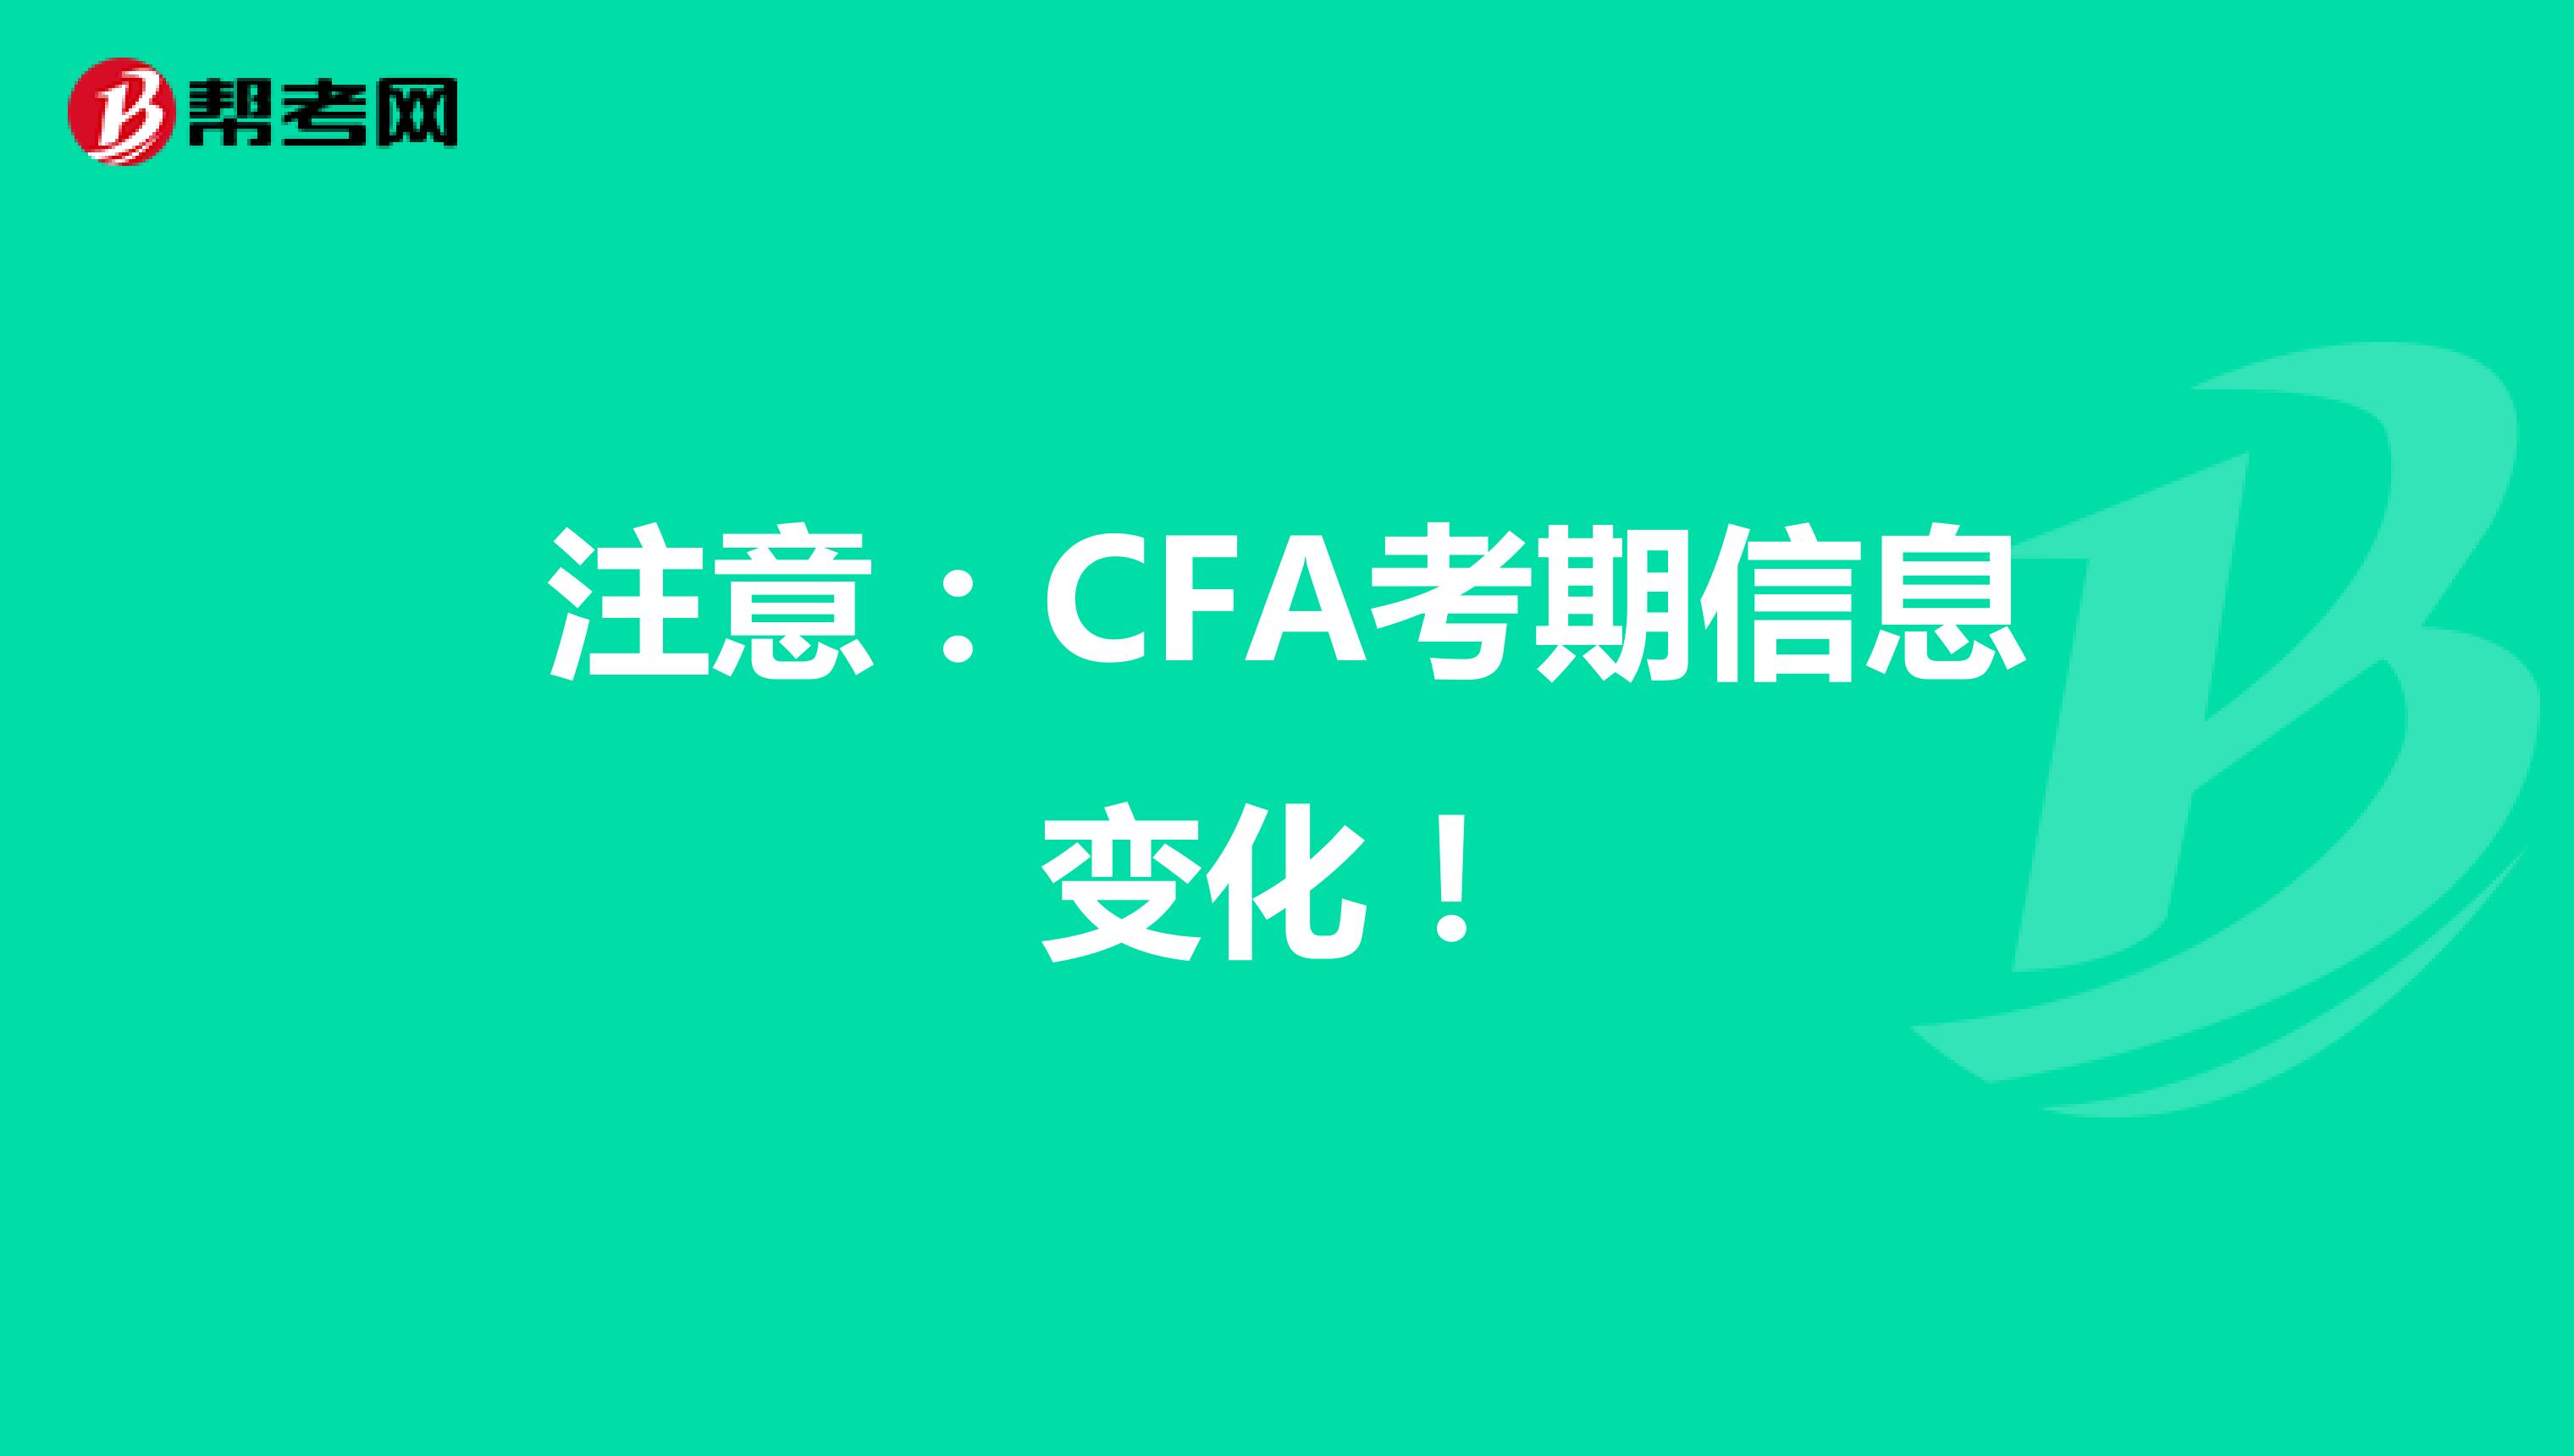 注意：CFA考期信息变化！